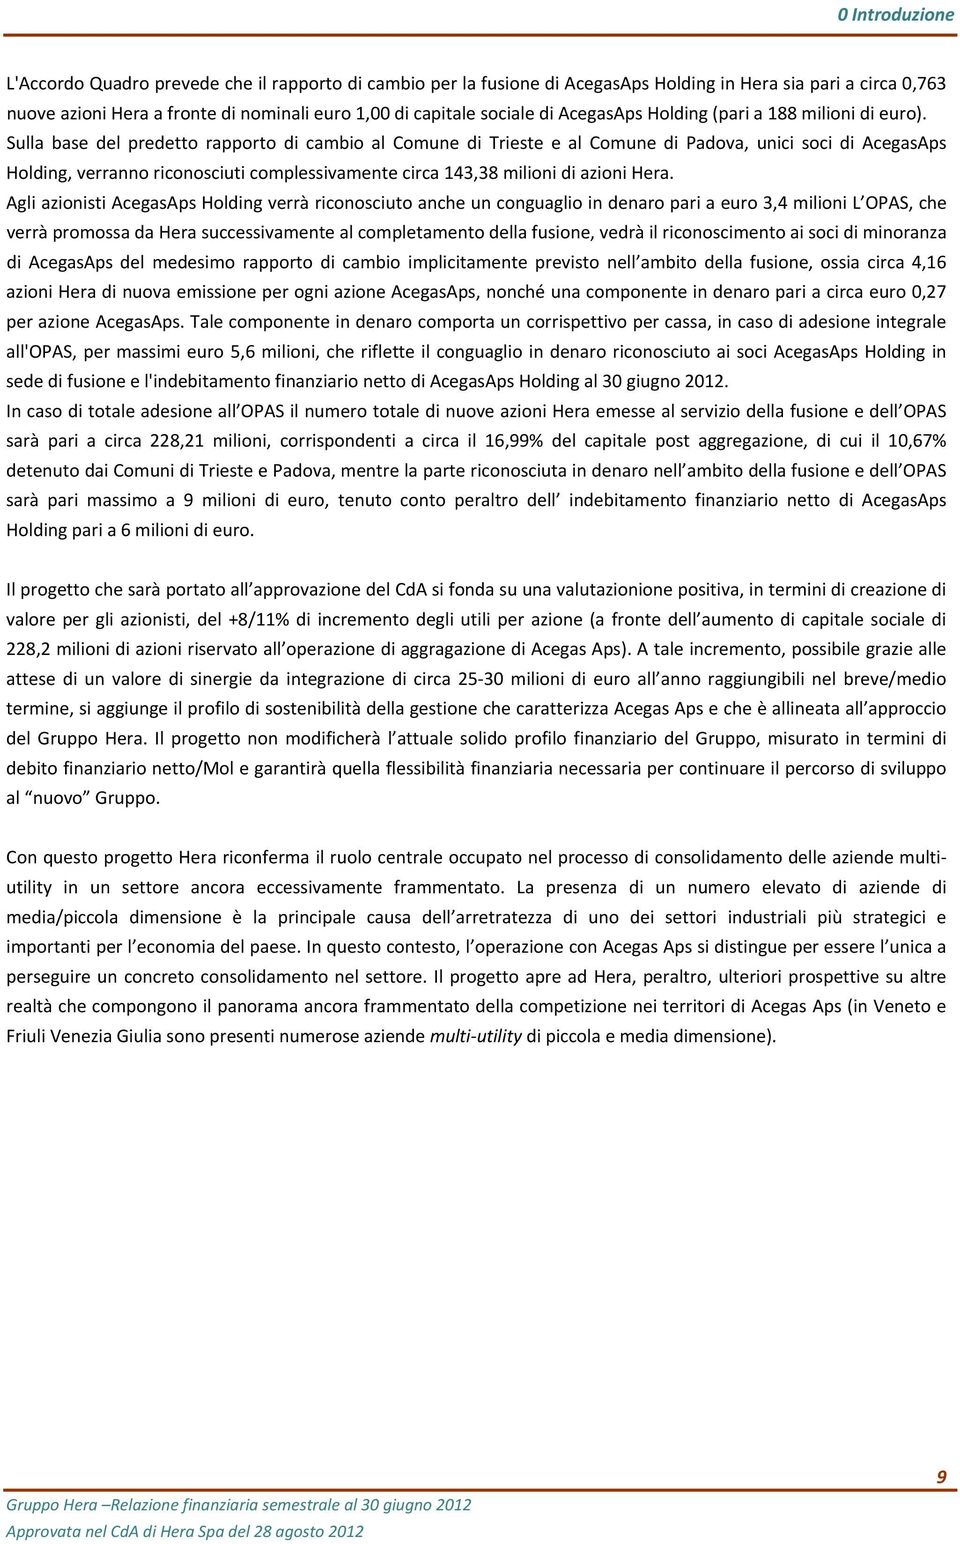 Sulla base del predetto rapporto di cambio al Comune di Trieste e al Comune di Padova, unici soci di AcegasAps Holding, verranno riconosciuti complessivamente circa 143,38 milioni di azioni Hera.